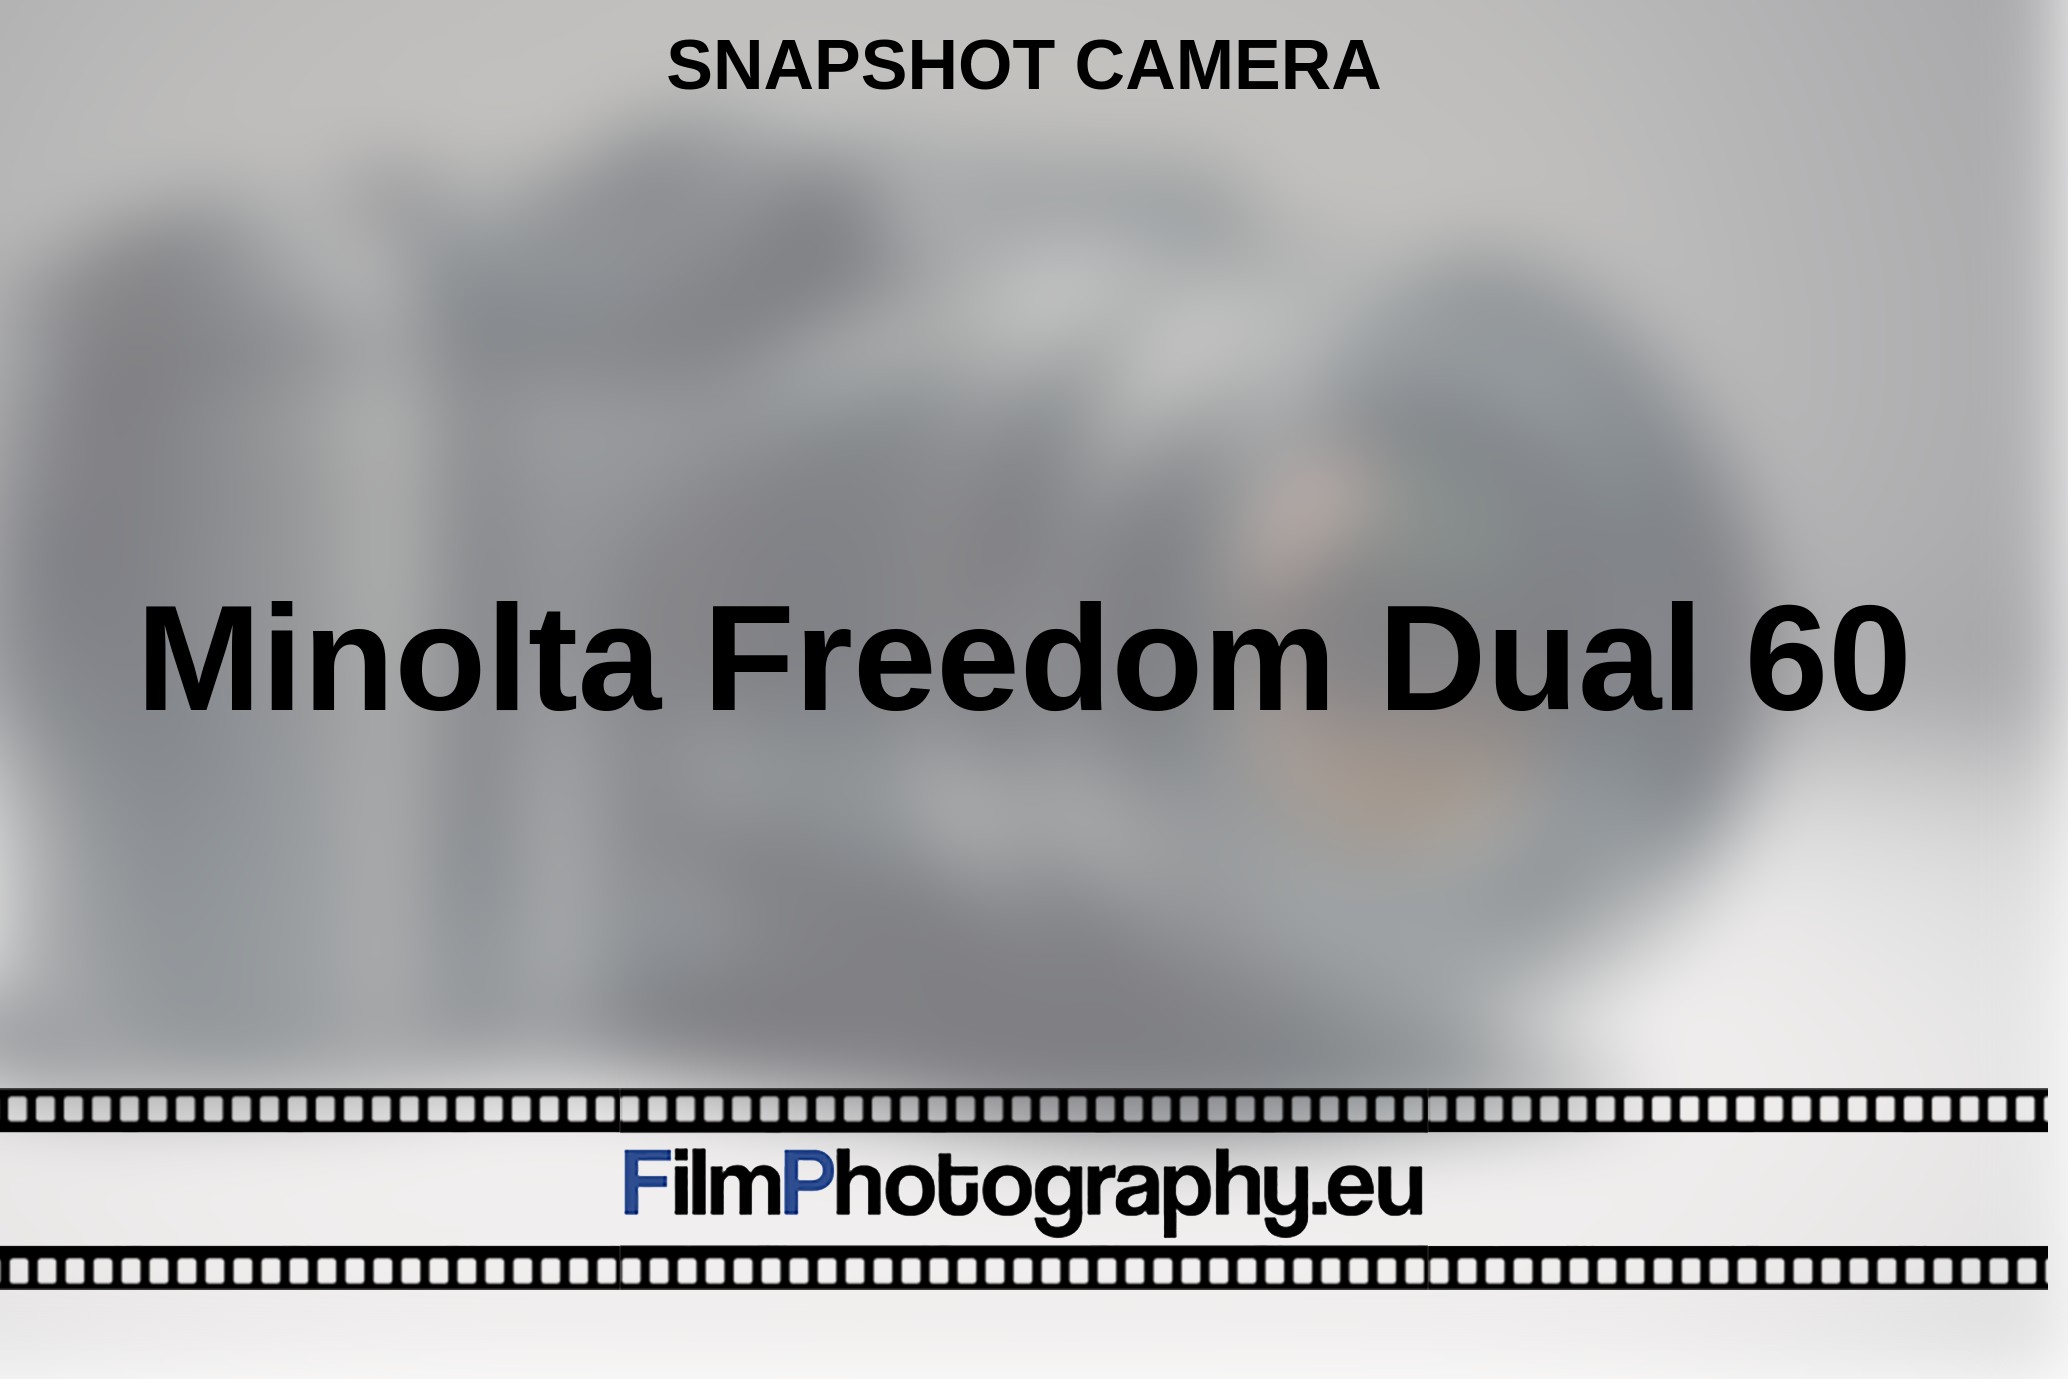 Minolta-Freedom-Dual-60-snapshot-camera-bnv.jpg